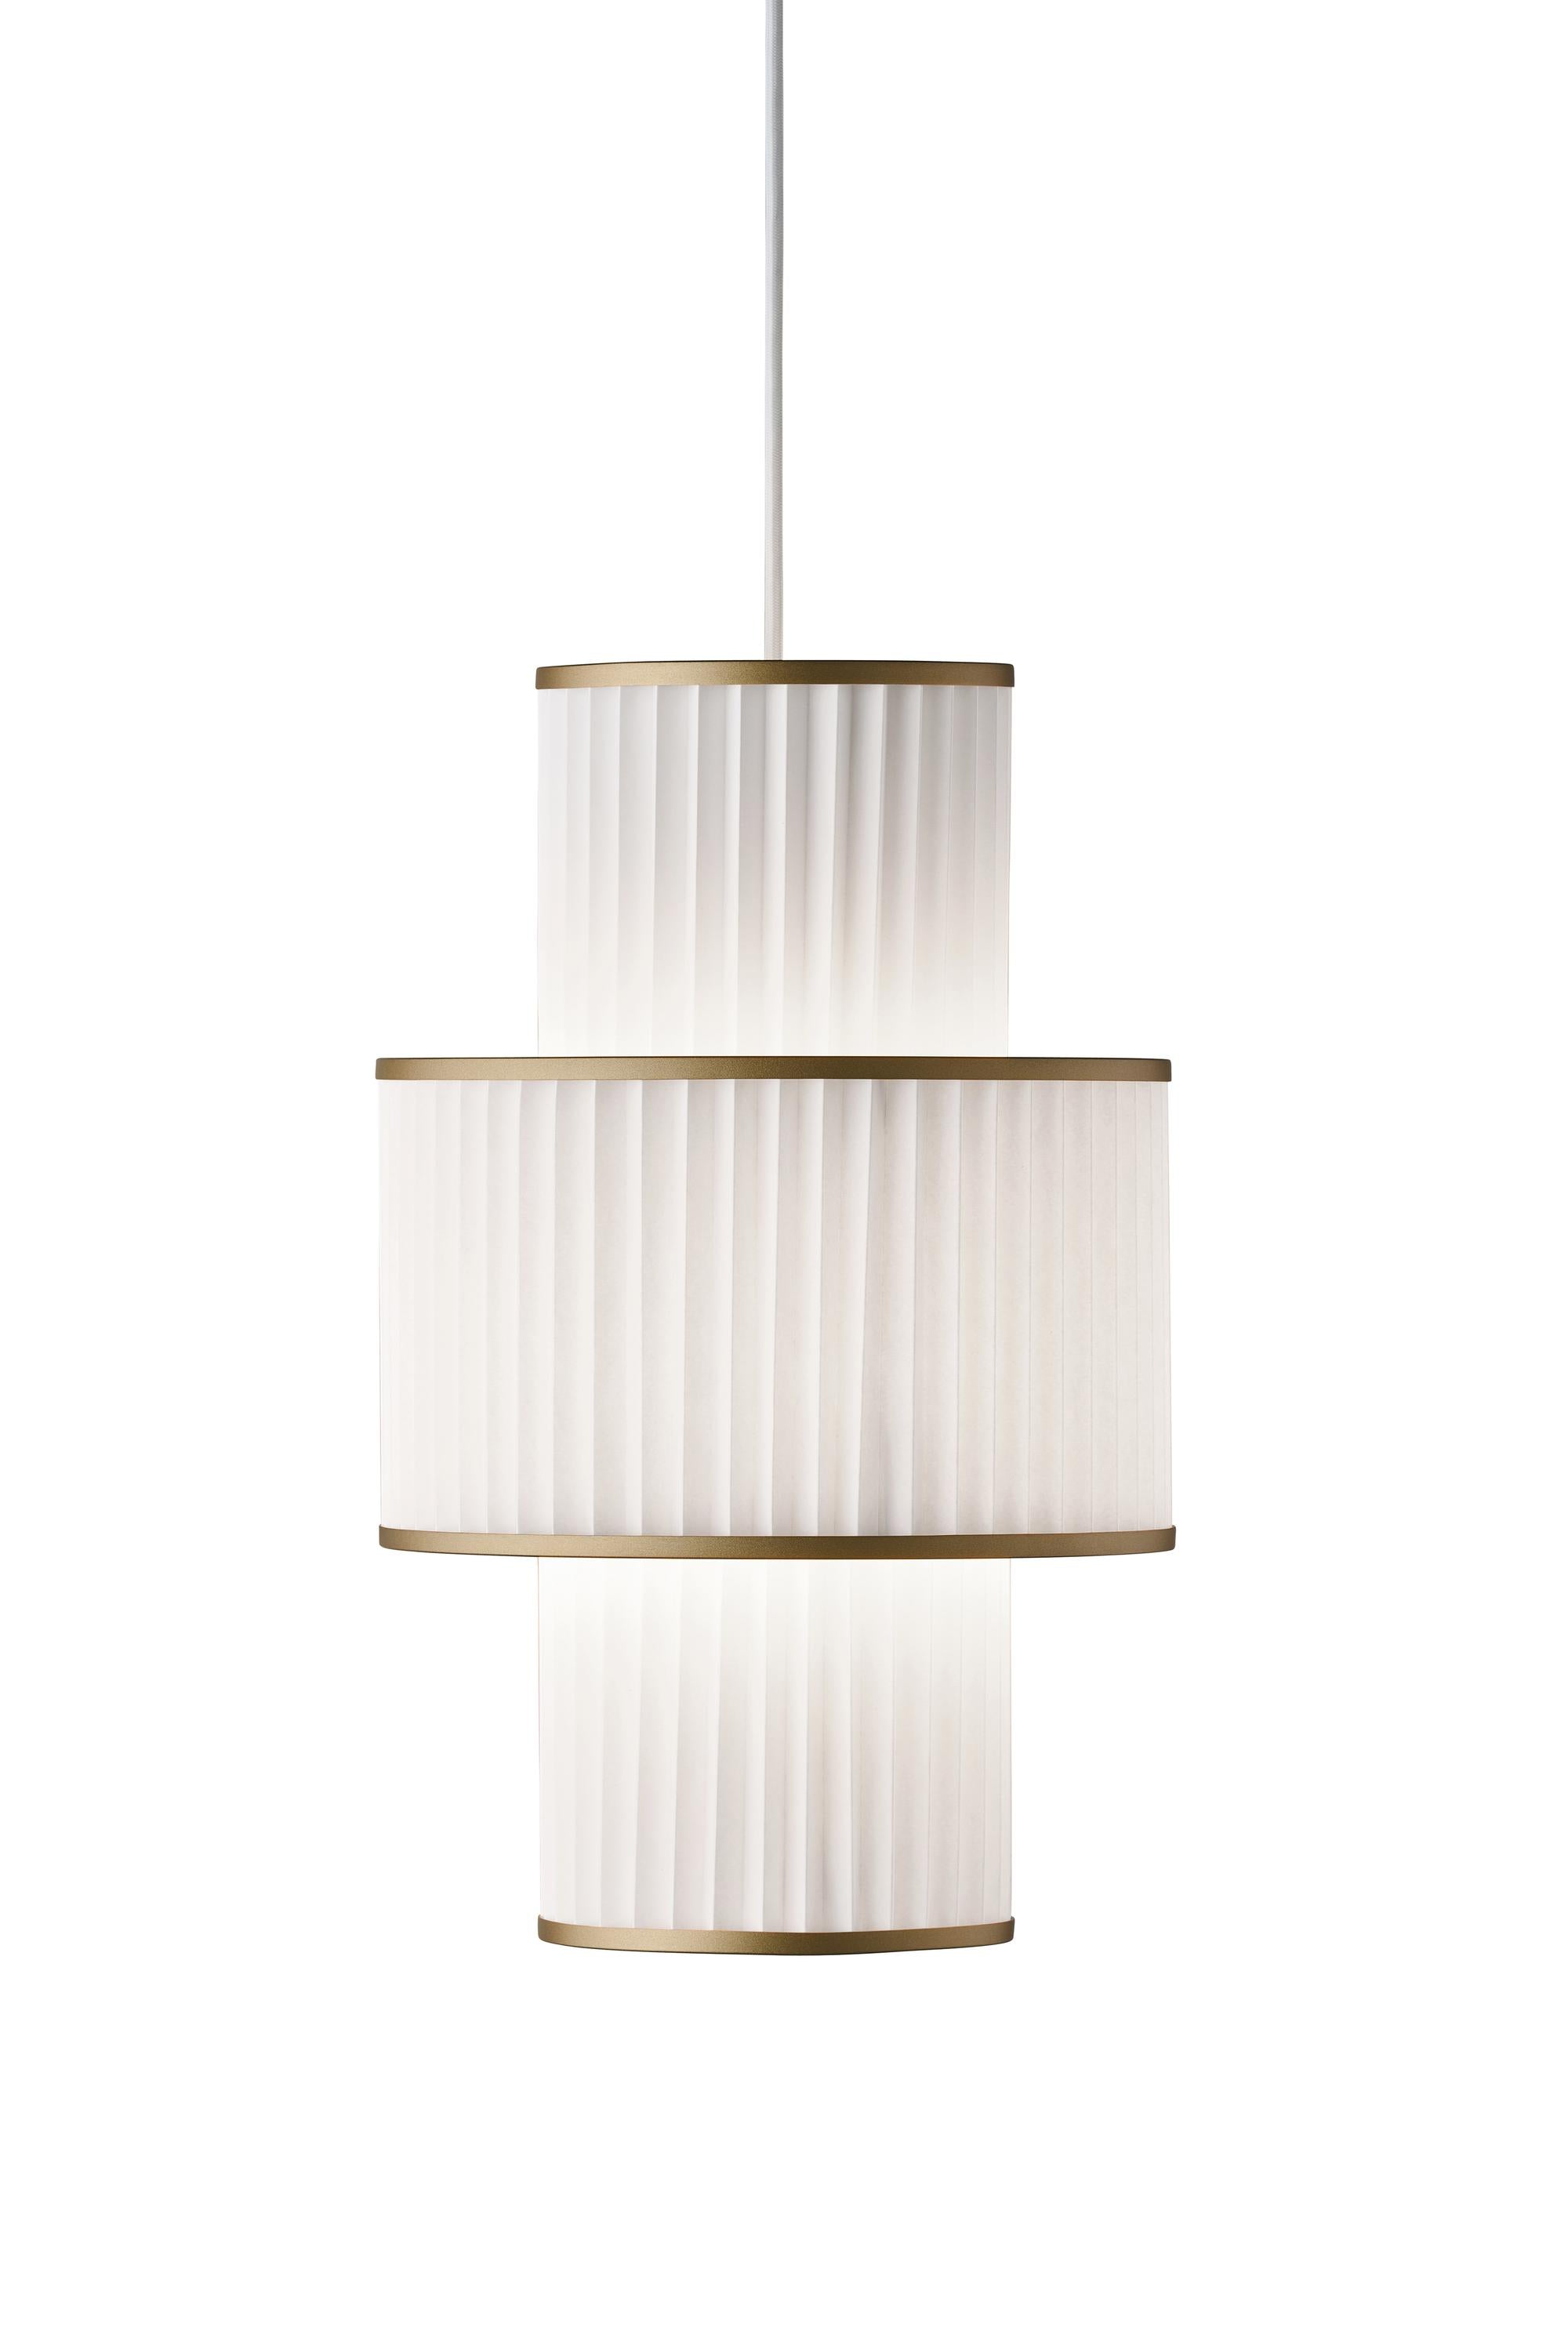 Le Klint PLIVELLO Lampe à suspension dorée / blanc avec 3 nuances (S M S)